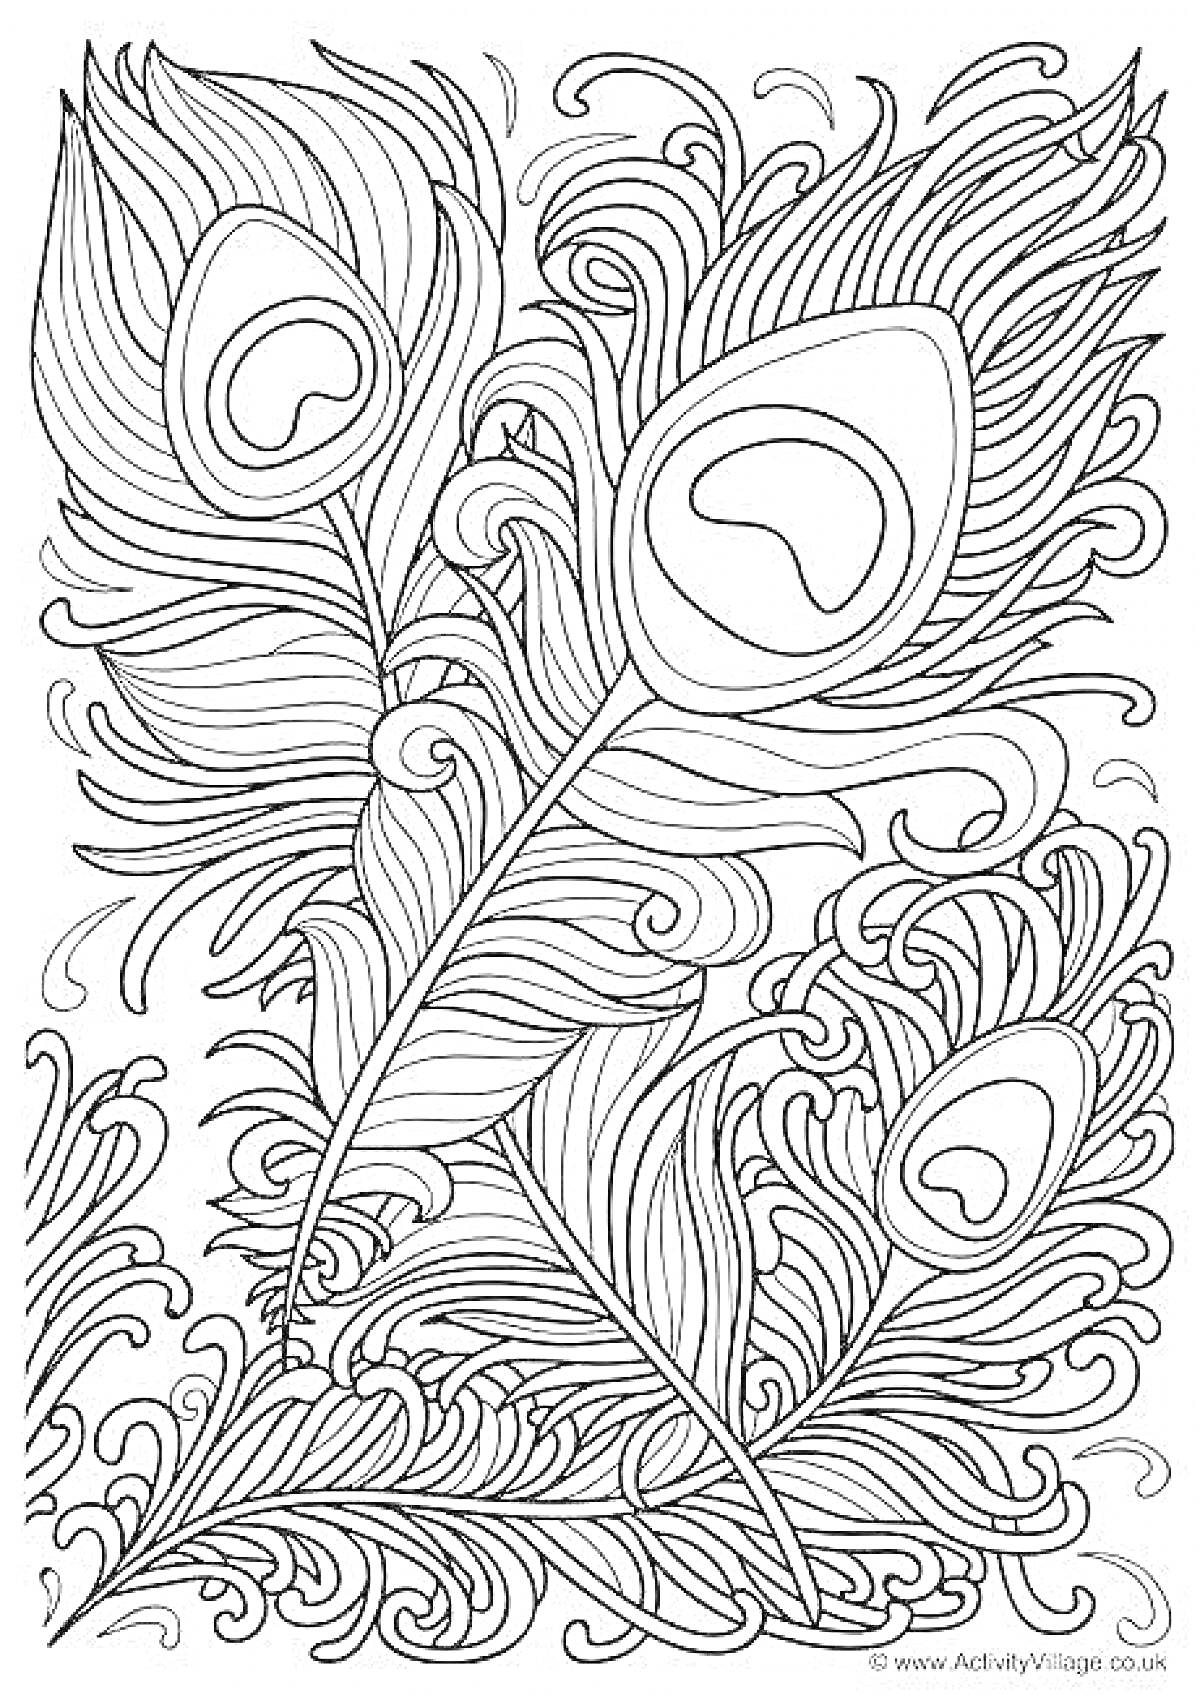 Раскраска Раскраска с тремя павлиньими перьями и декоративными узорами